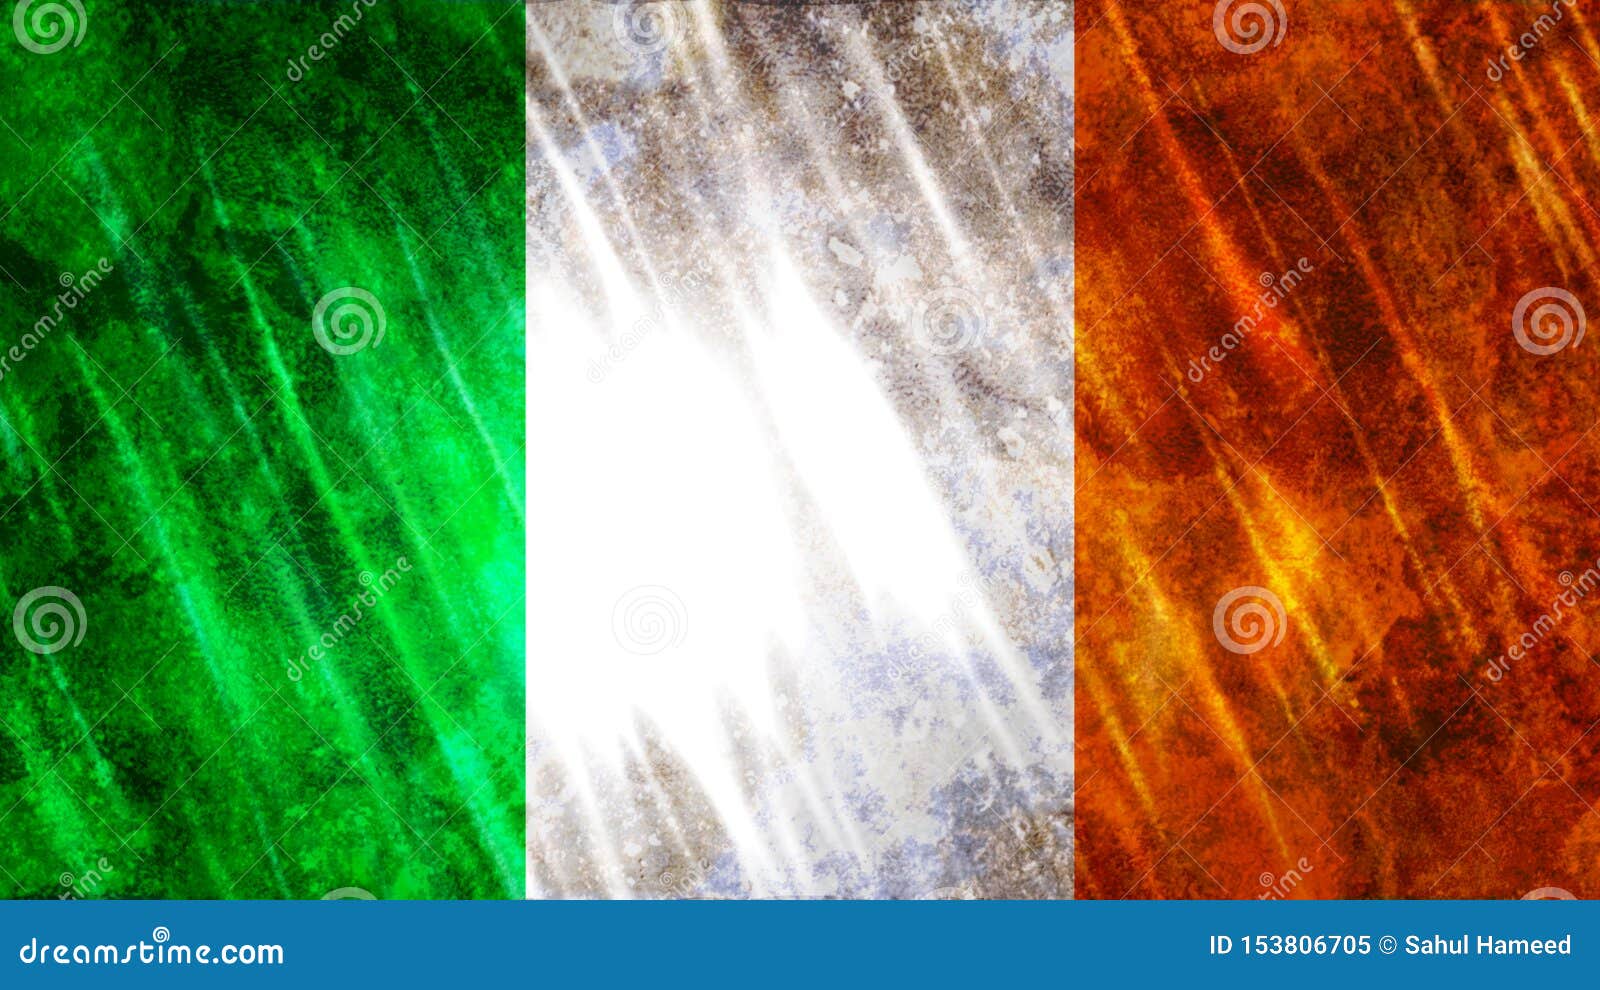 De Vlag Van Ierland Stock Afbeelding. Image Of Zaken - 153806705